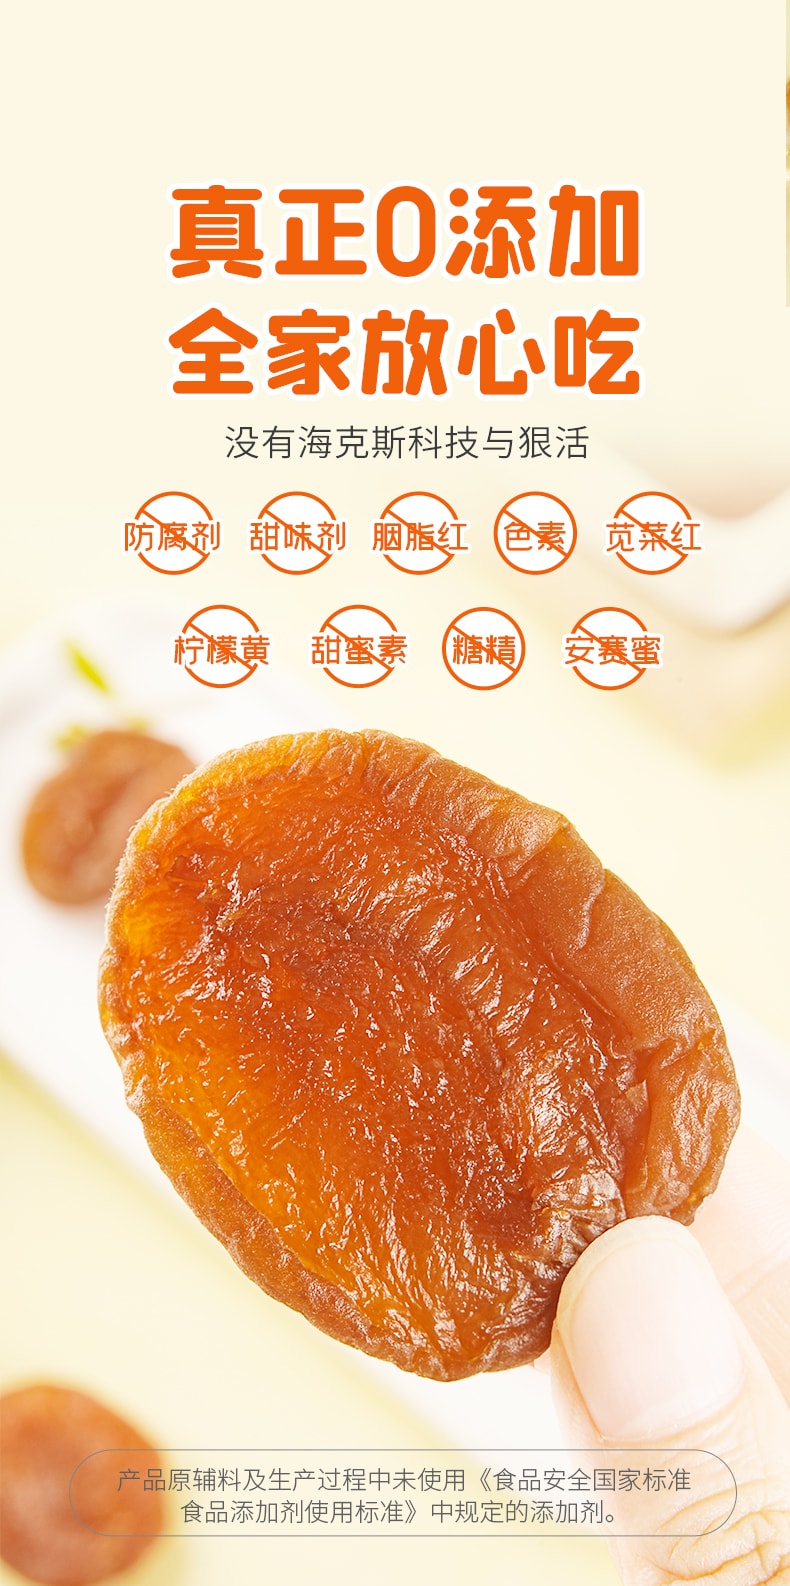 中國 玄谷村 無燻硫的杏肉乾 80克 零脂無核金杏乾 真空鎖鮮包裝 口味較鮮軟 0脂肪的飯後果盤 全家放心吃